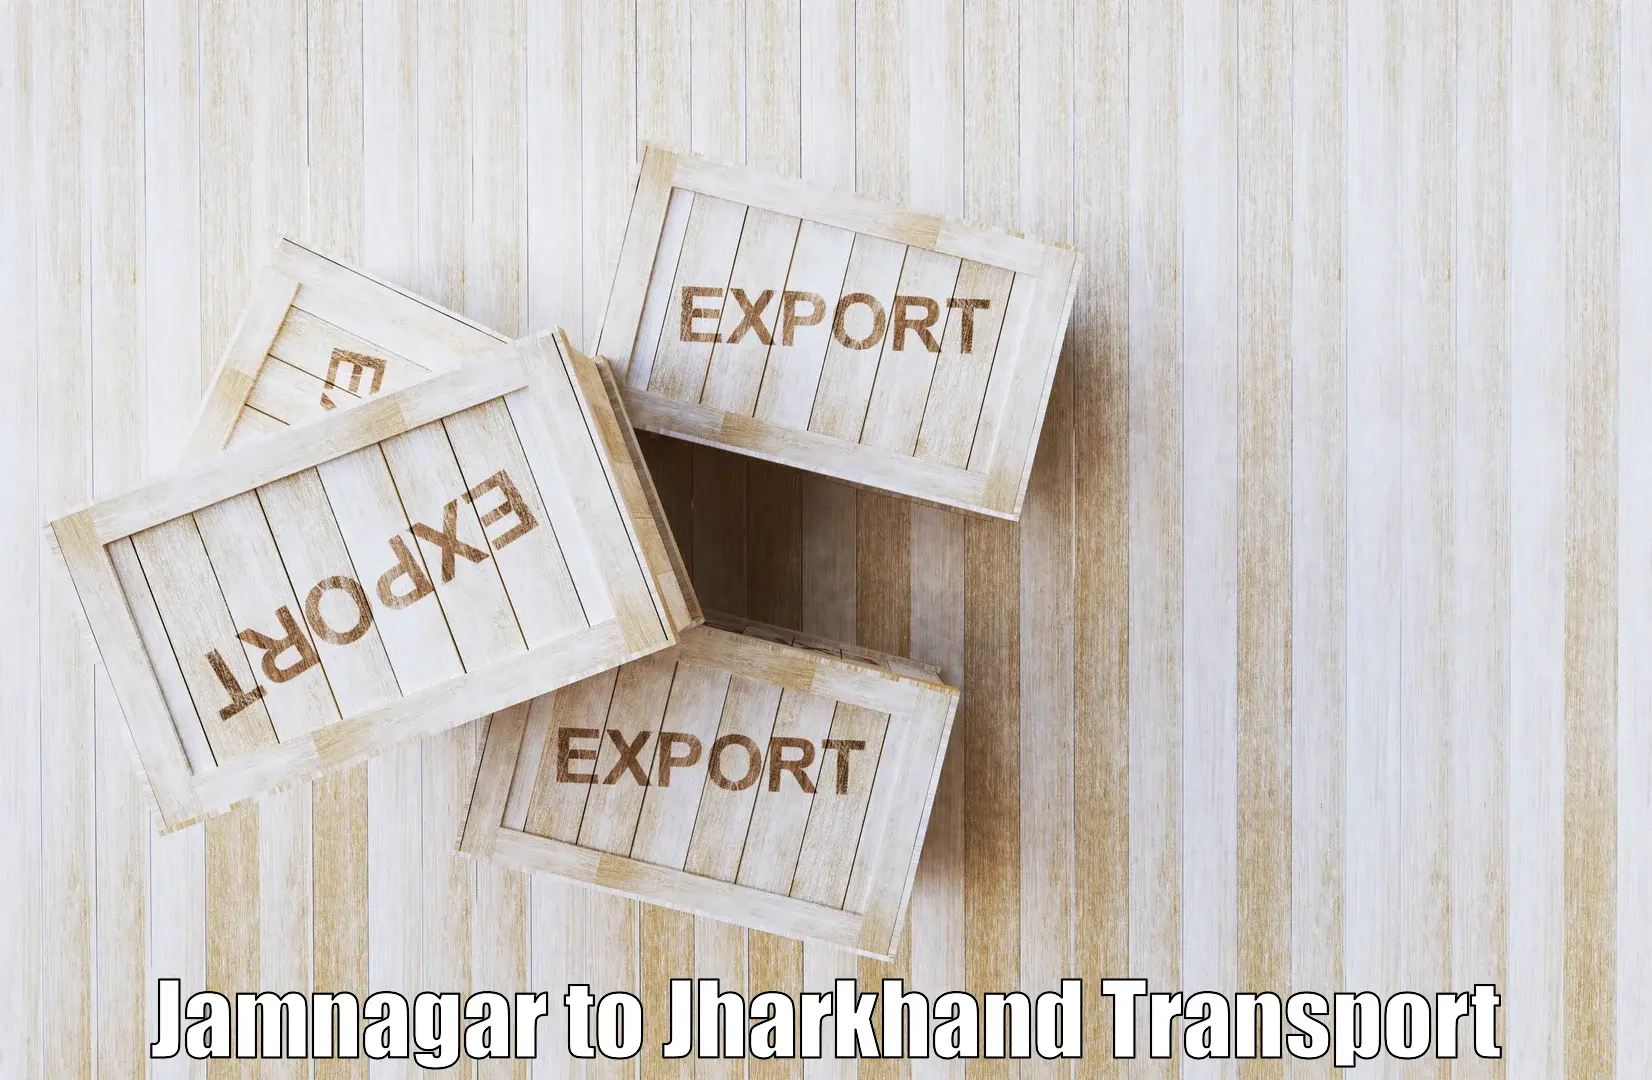 Express transport services Jamnagar to Hazaribagh